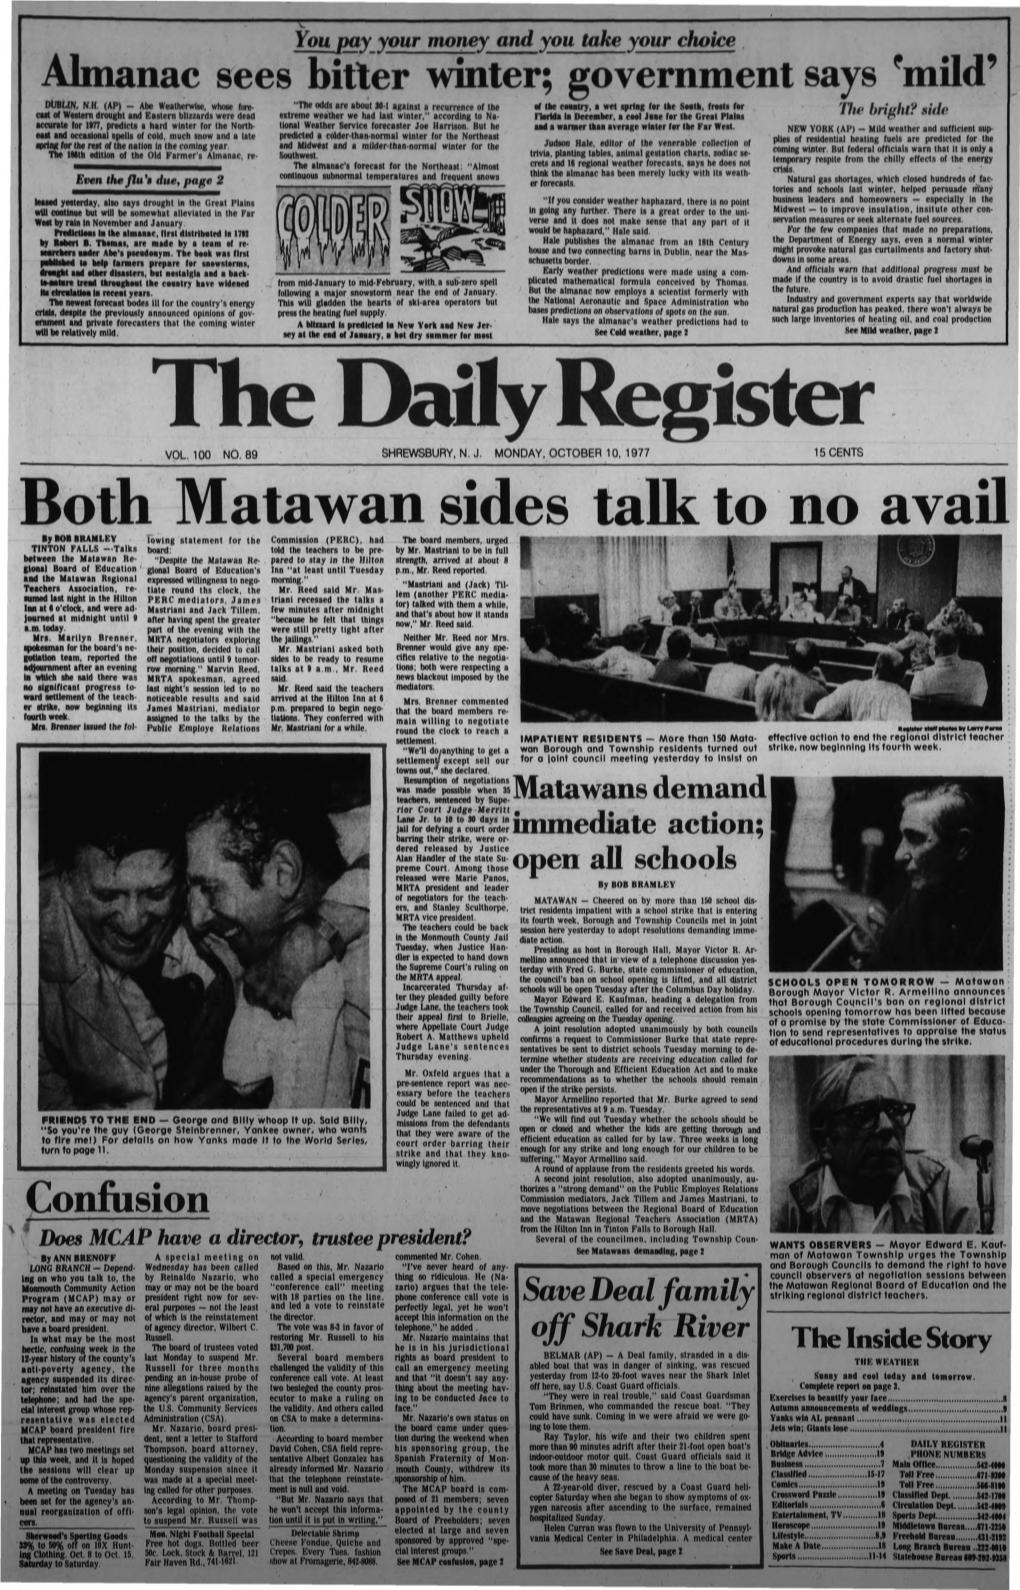 Both Matawan Sides Talk to No Avail by BOB BRAN I